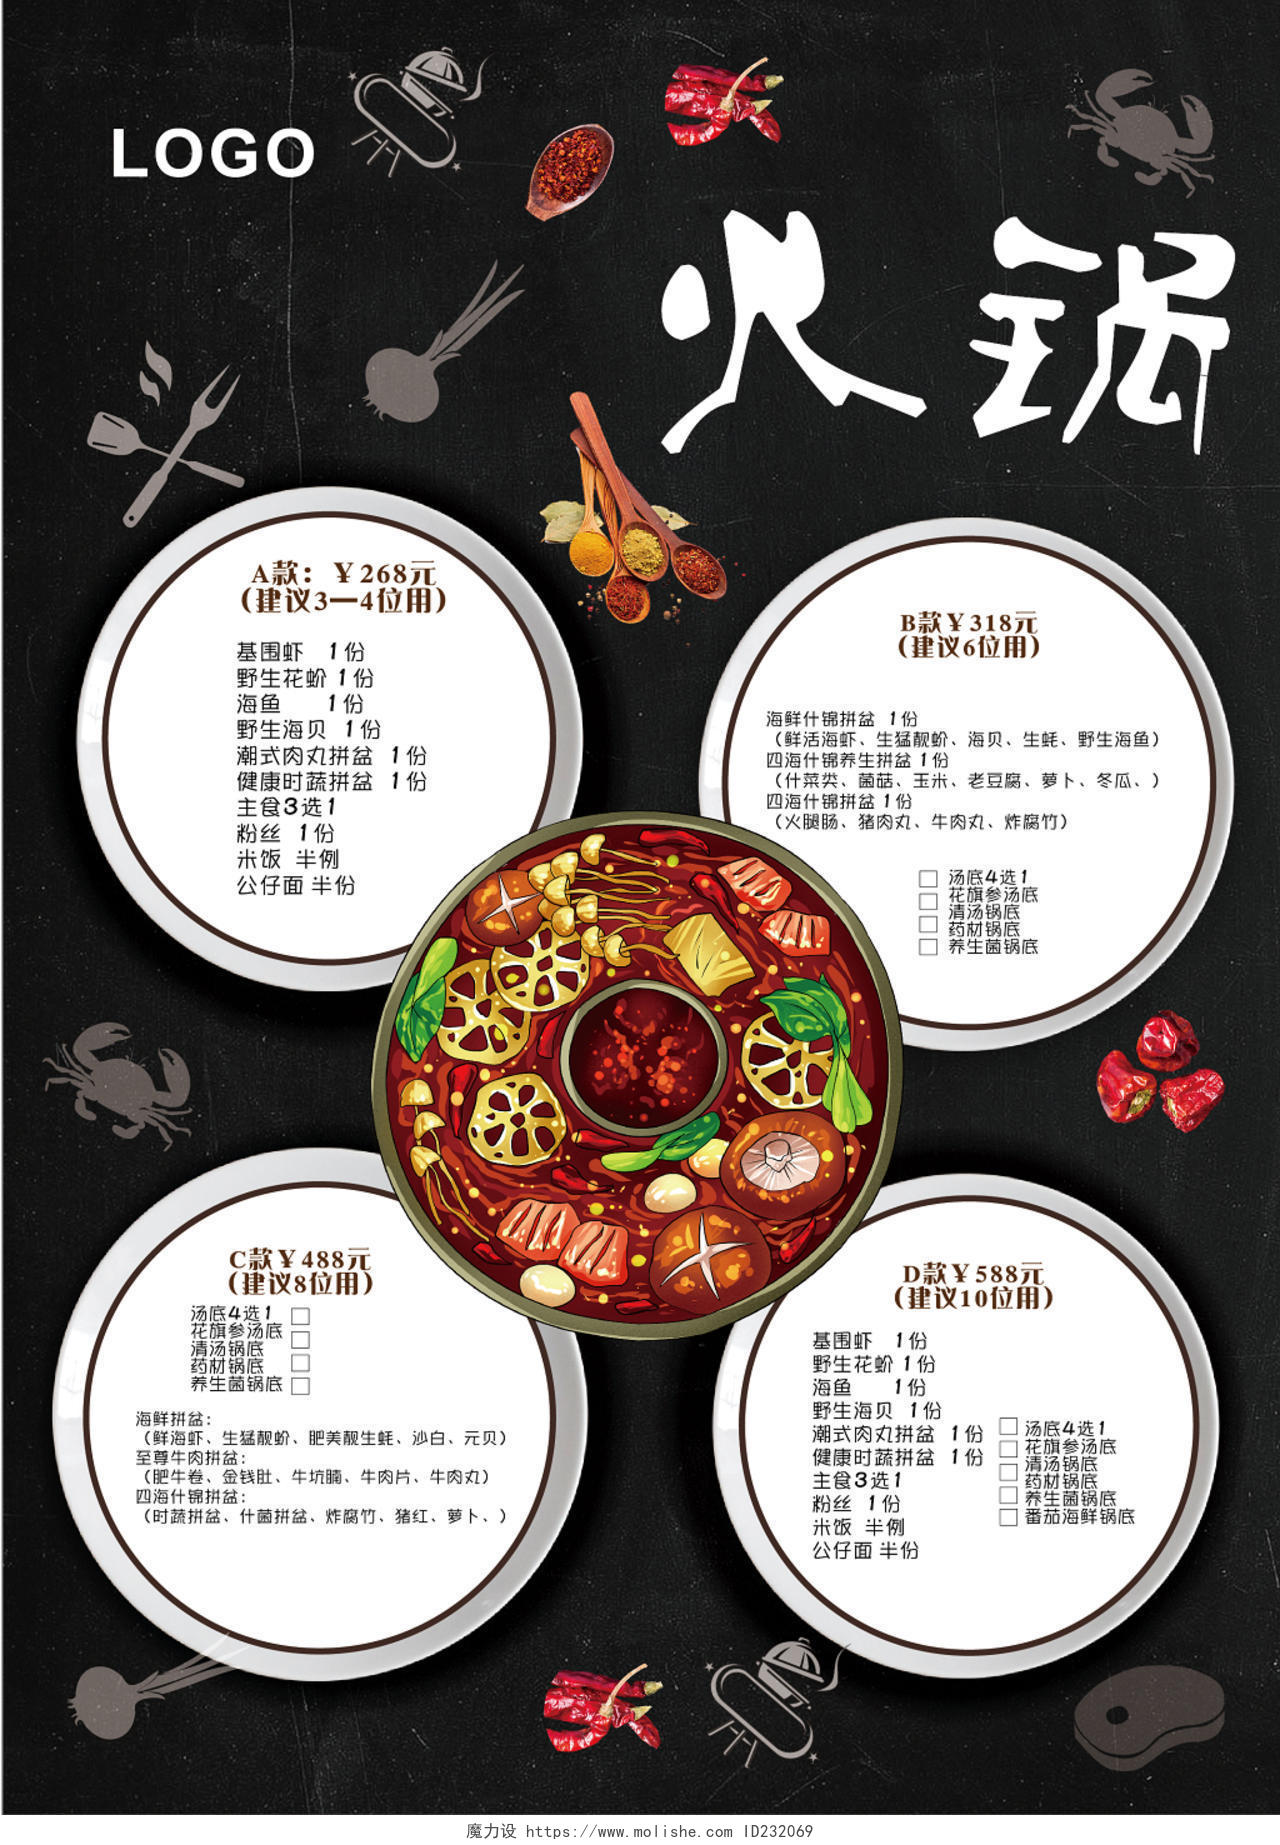 老北京火锅手绘酷黑菜单